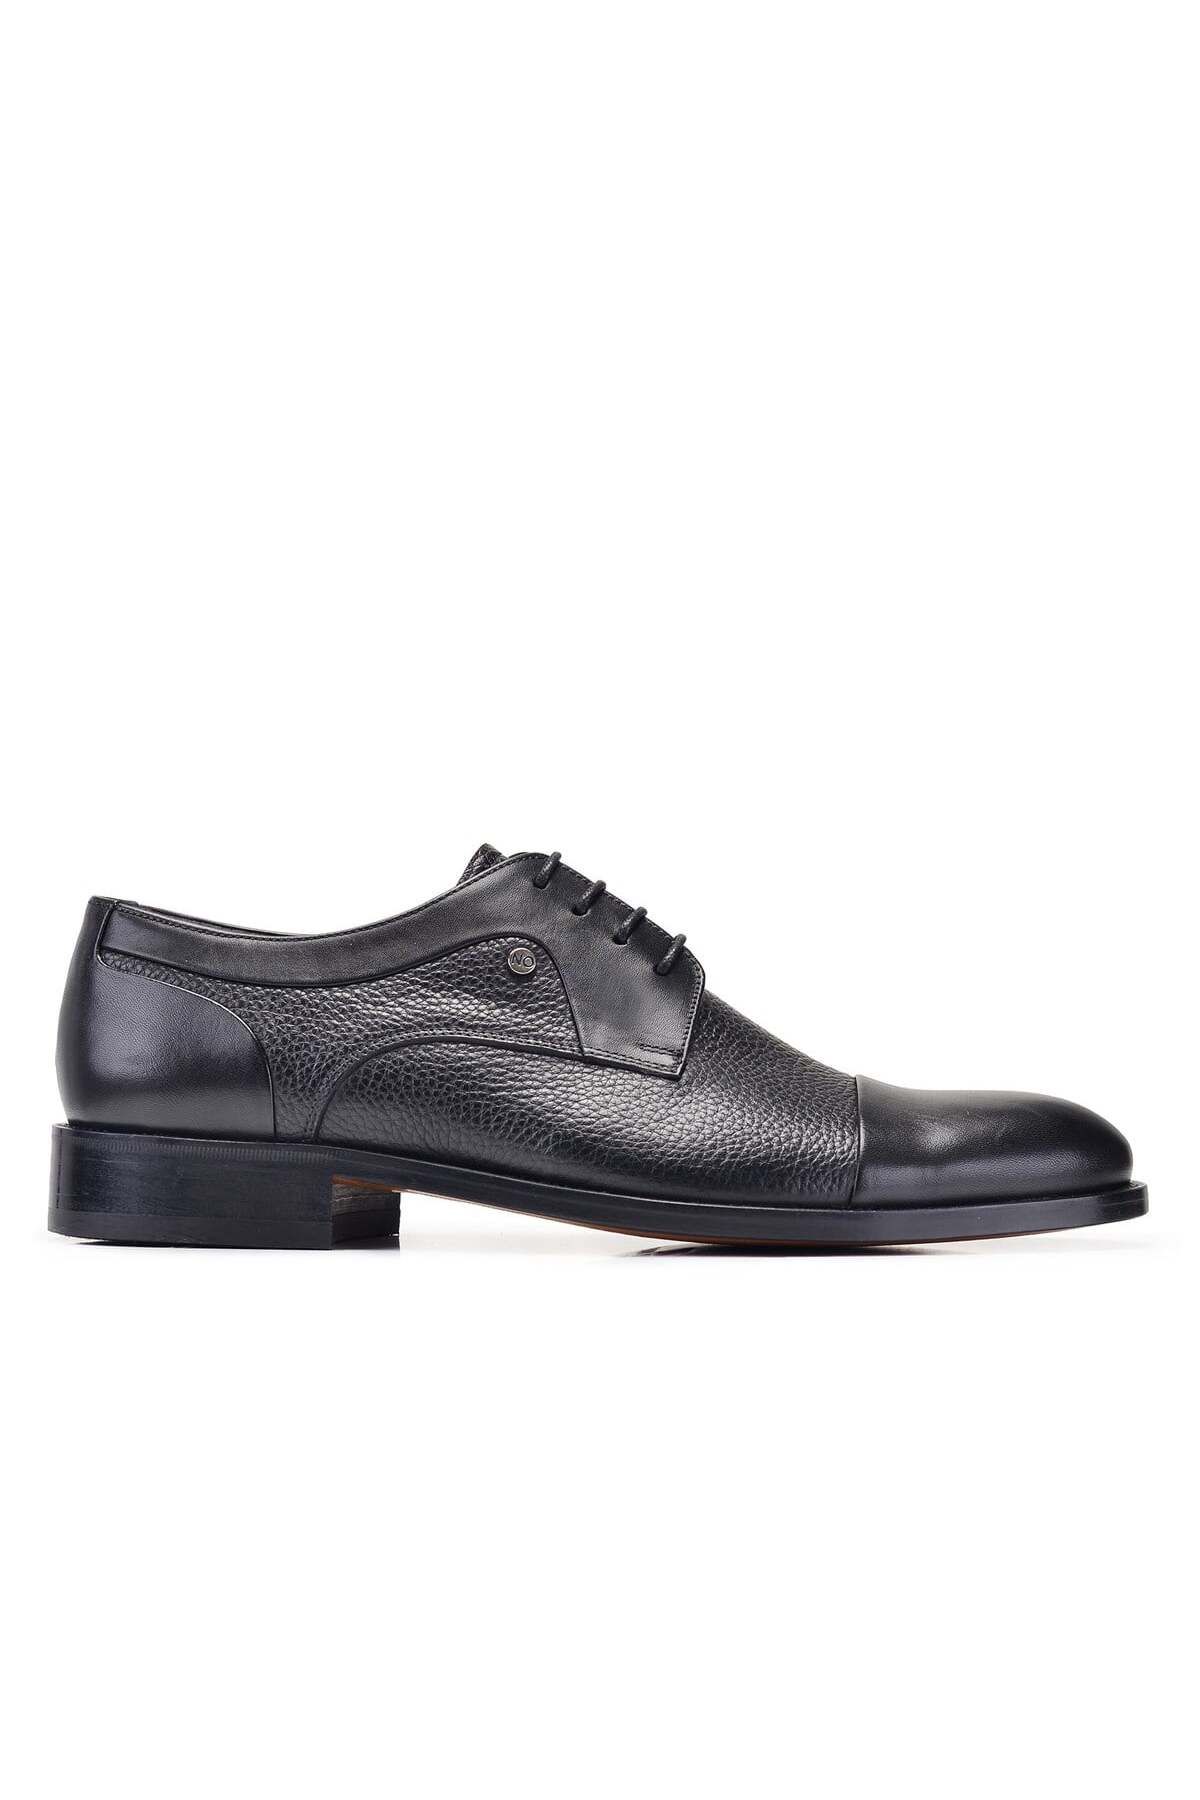 Nevzat Onay Siyah Klasik Bağcıklı Kösele Erkek Ayakkabı -10342-